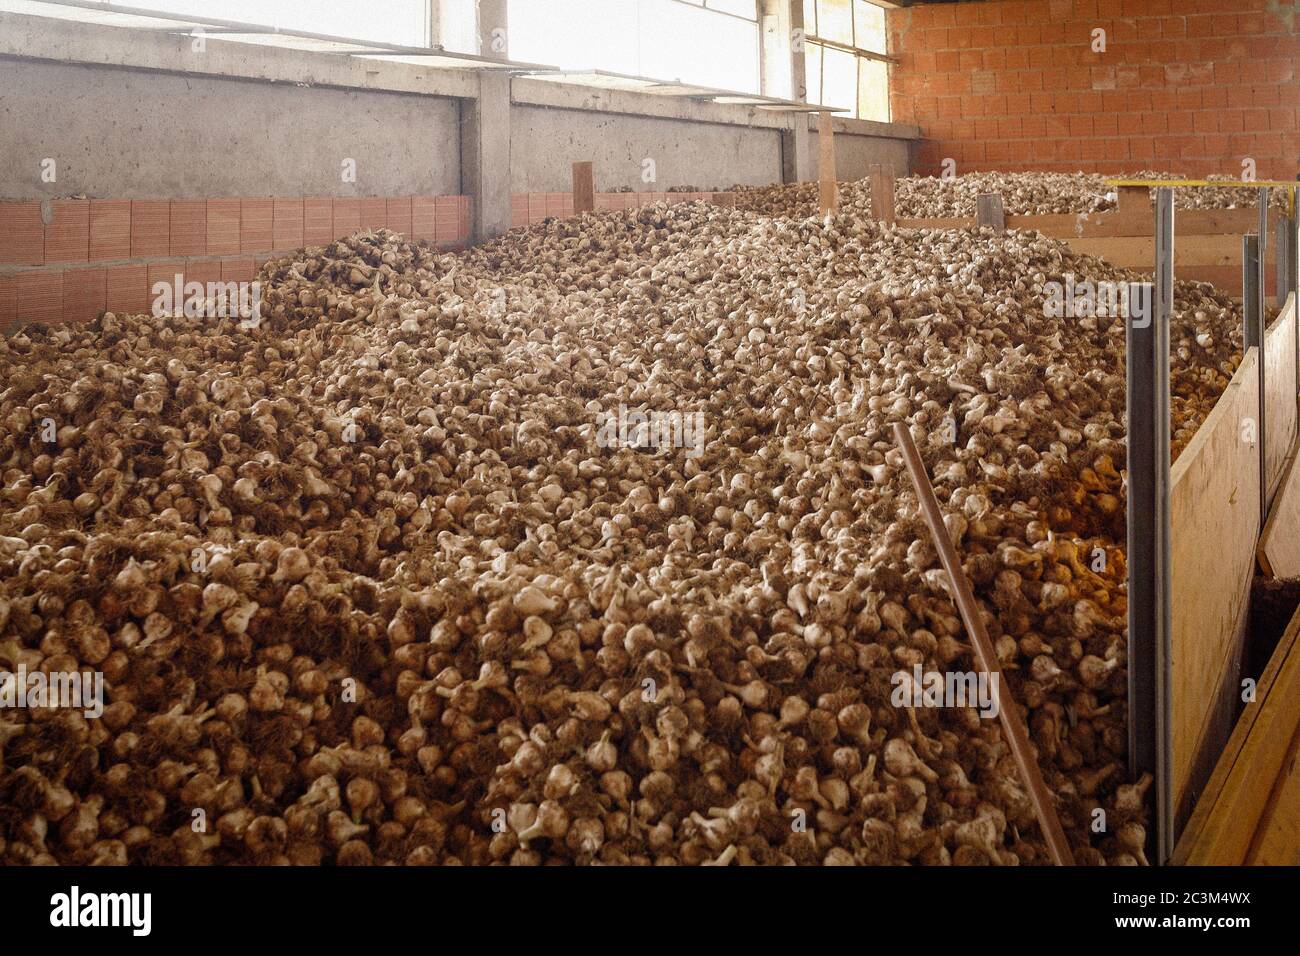 Italia Emilia Romagna - Ducentola di Voghiera (FE) - Azienda agricola aglio del Nonno - lavorazione e produzione di aglio DOP Voghiera Foto Stock